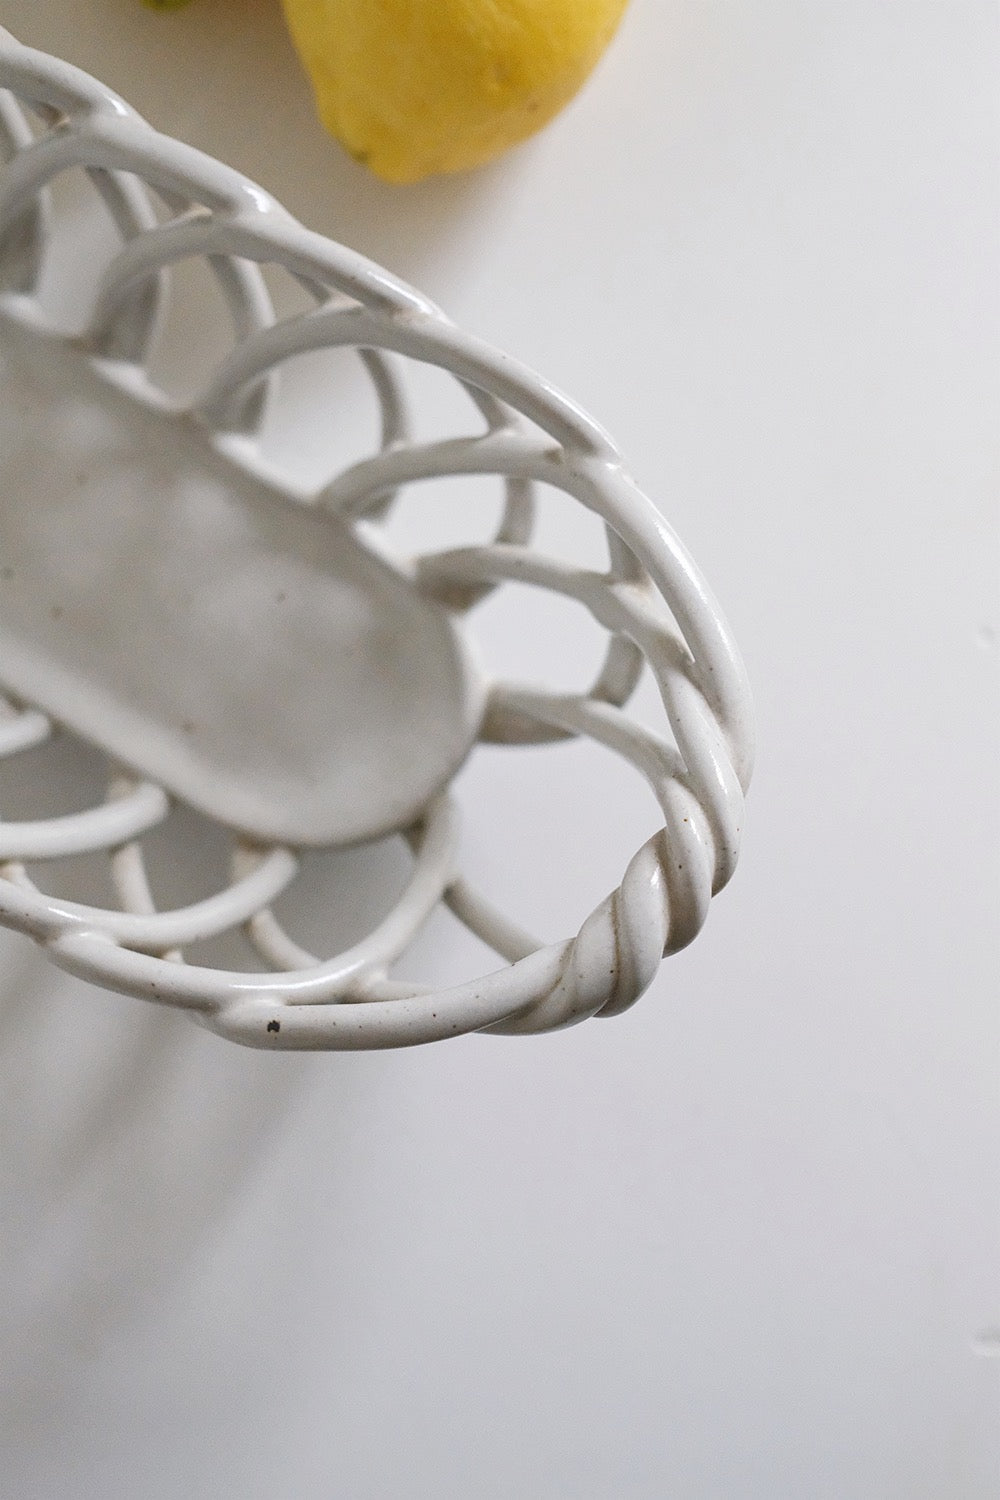 handmade ceramic basket